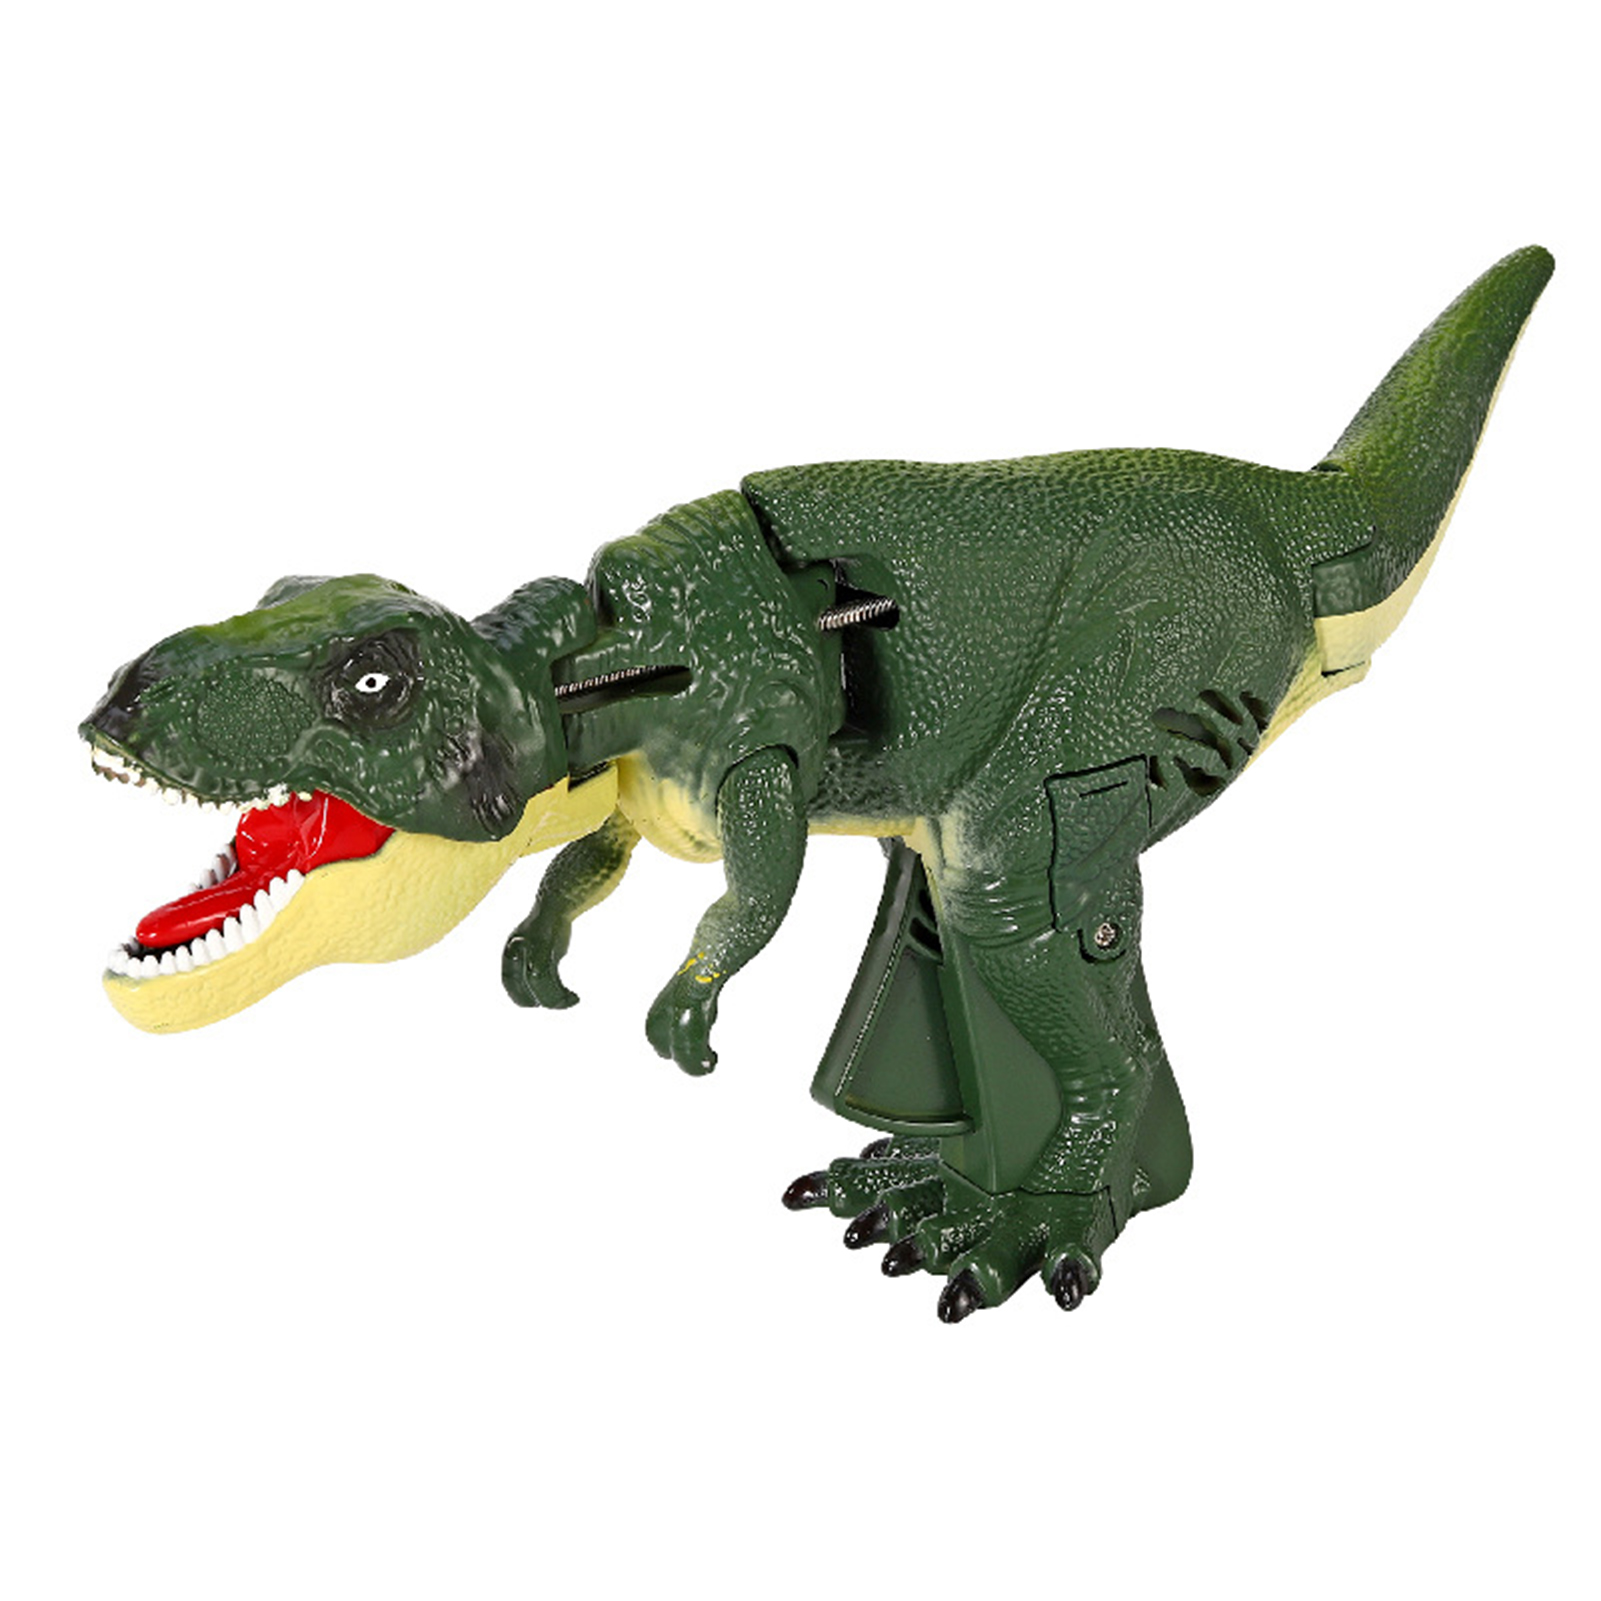 Khủng long mini đồ chơi hình khủng long thu đồ chơi hình khủng long đồ chơi hình khủng long gầm tương tác với món quà sinh nhật hoàn hảo đuôi lúc lắc cho trẻ em đồ chơi điện mô hình động vật khủng long thực tế với cuộc tấn công nổi bật cho bé trai